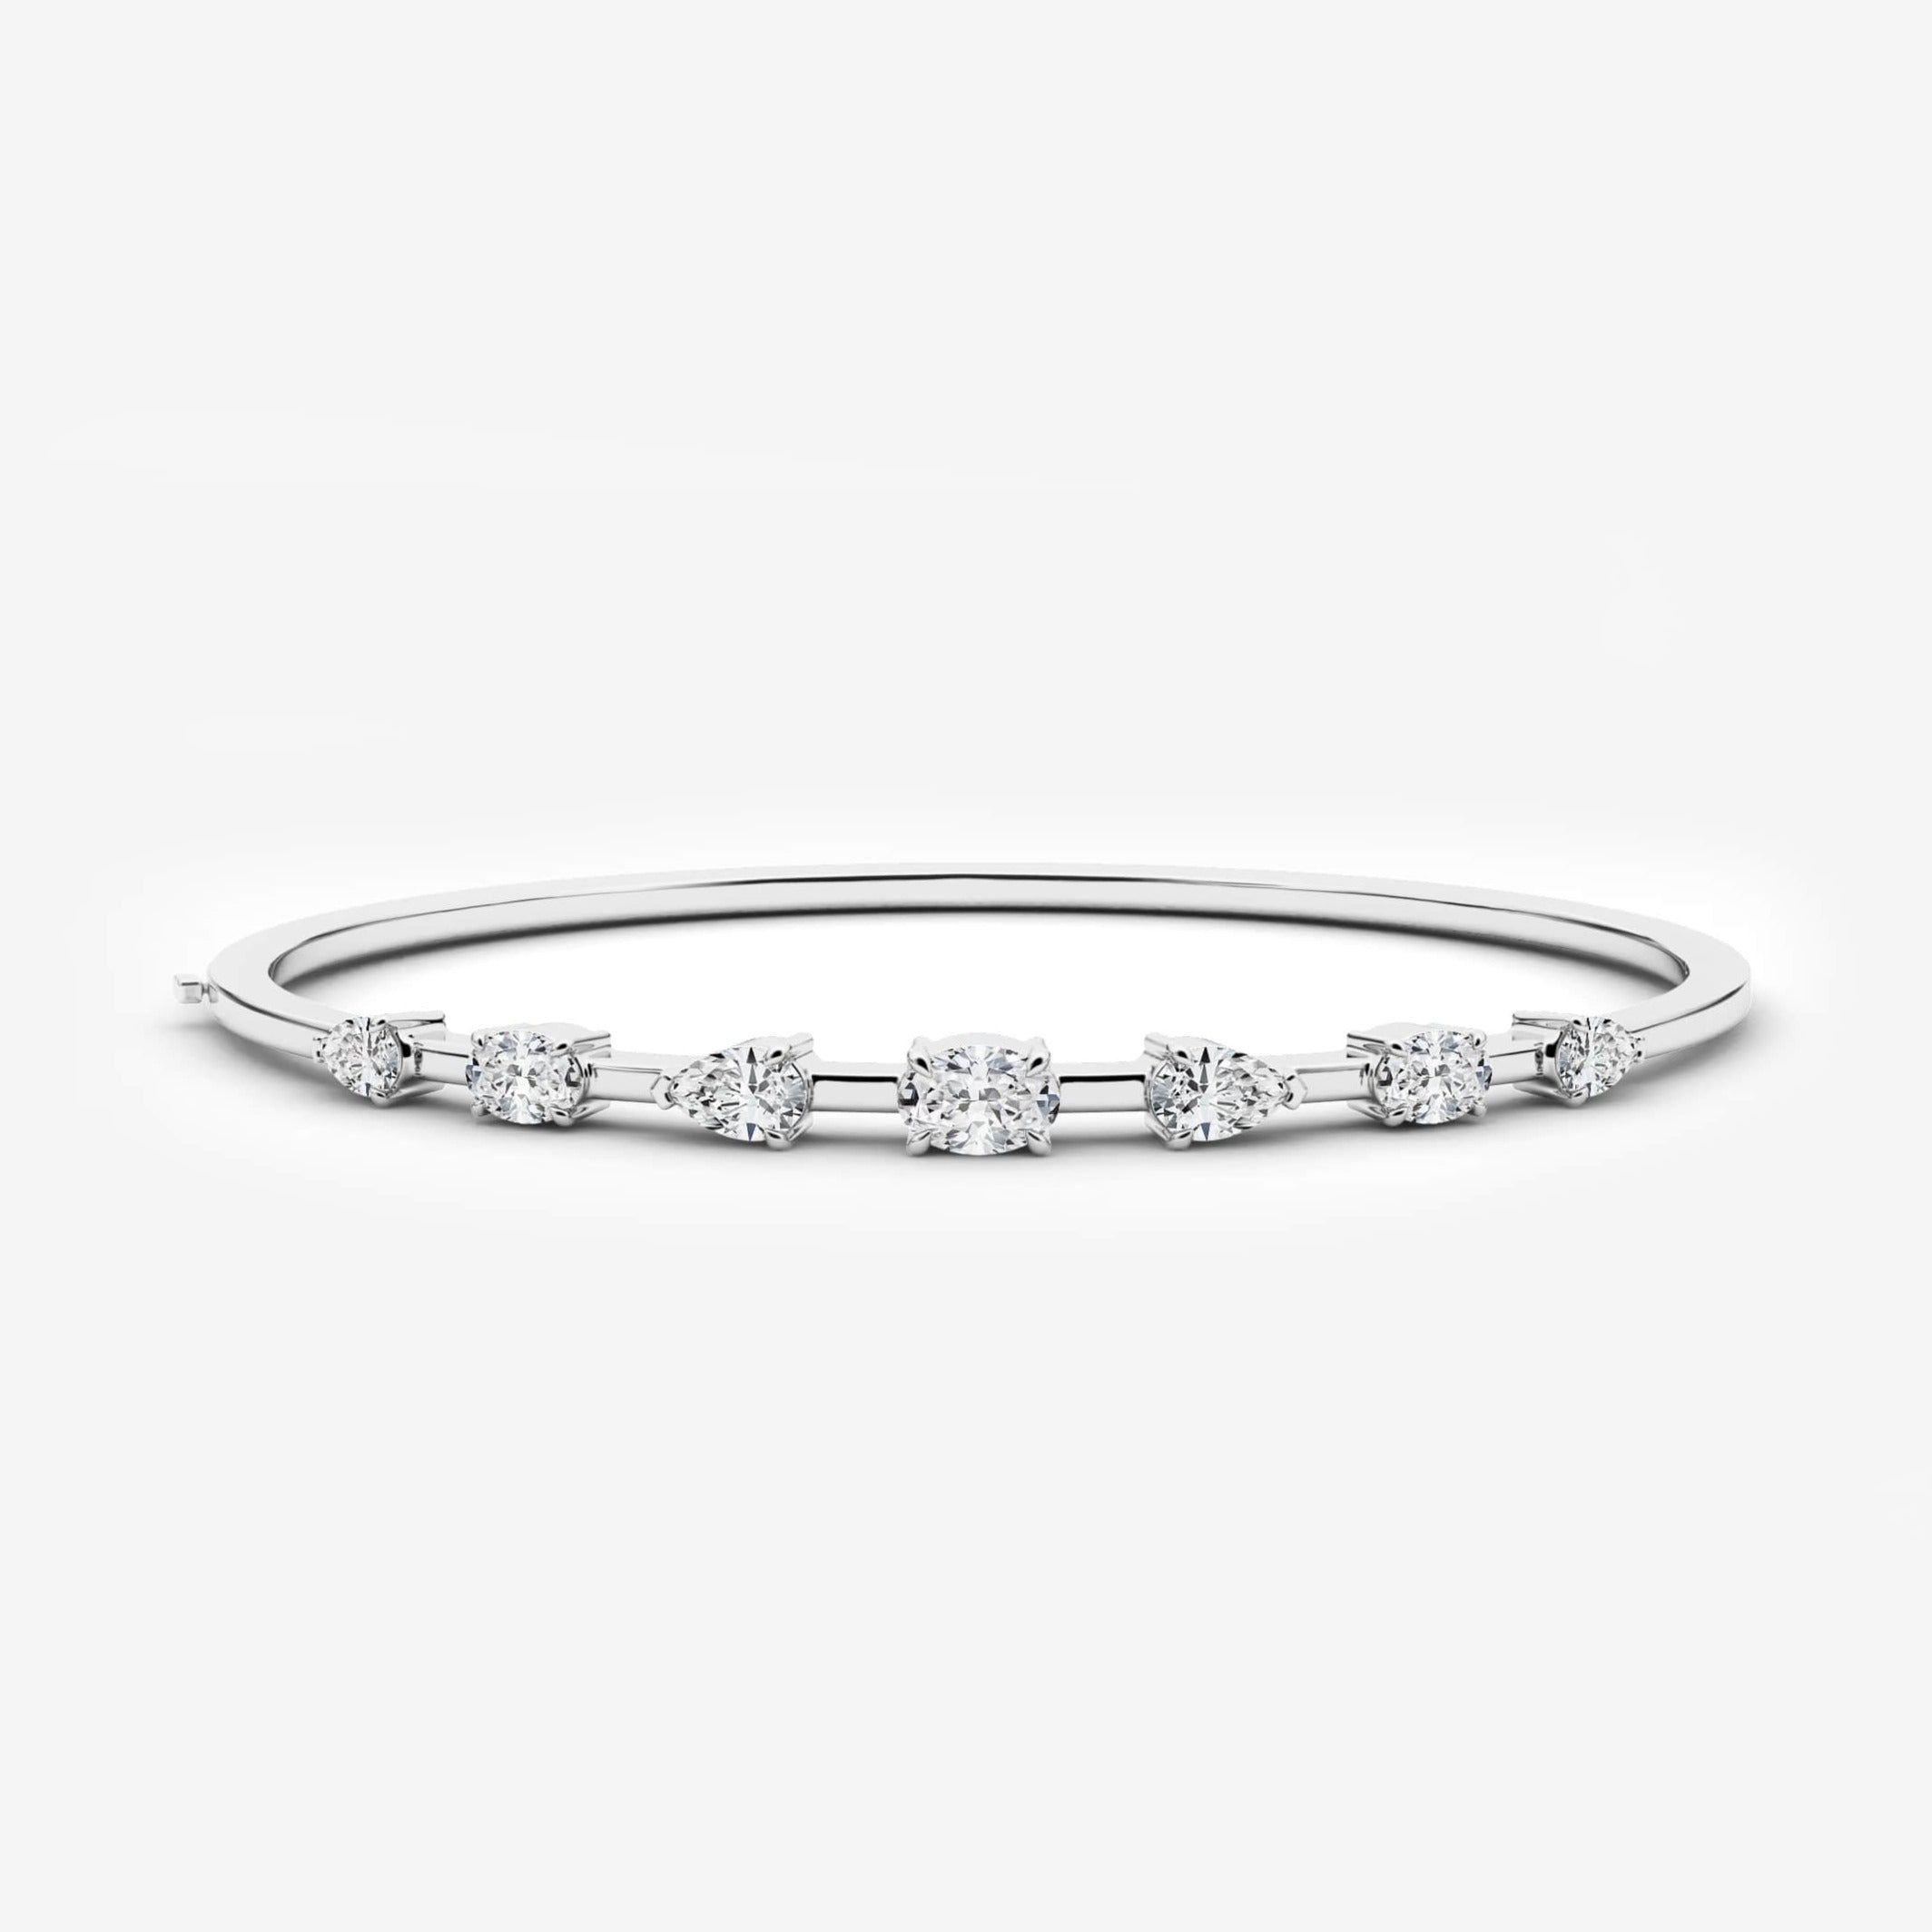 White gold cluster diamond bracelet